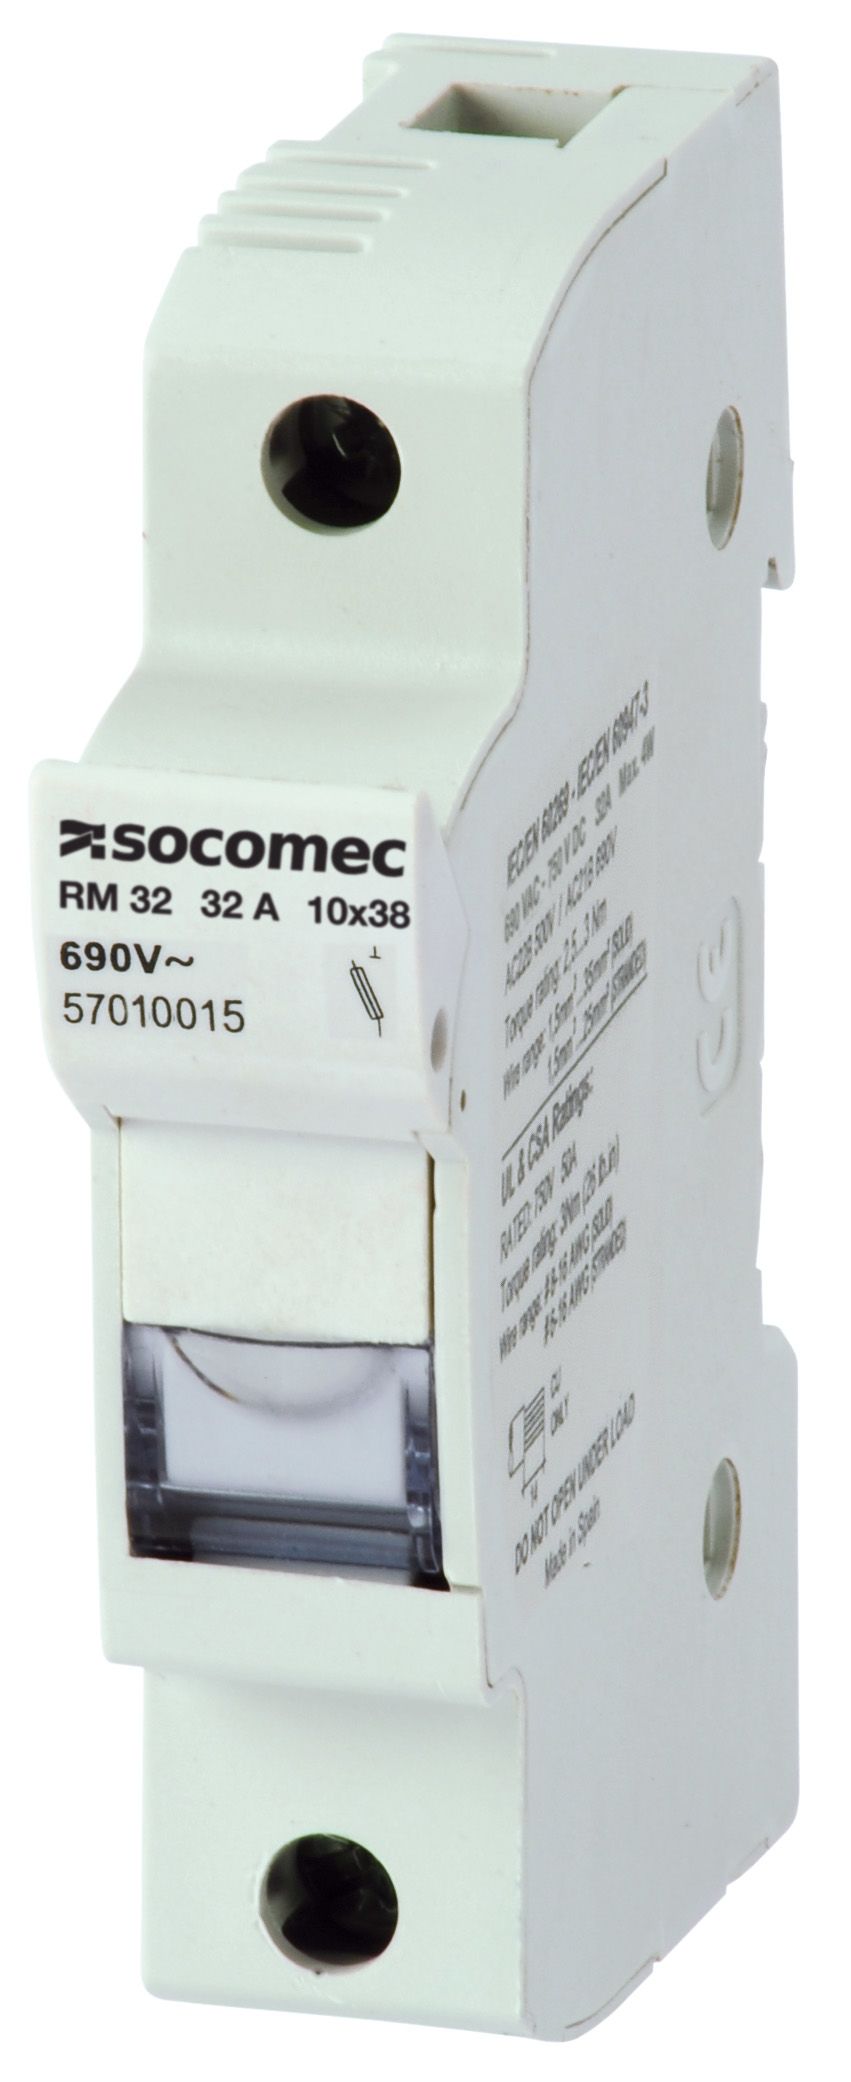 Socomec 100A Rail Mount Fuse Holder for 22 x 58mm Fuse, 3P+N, 690V